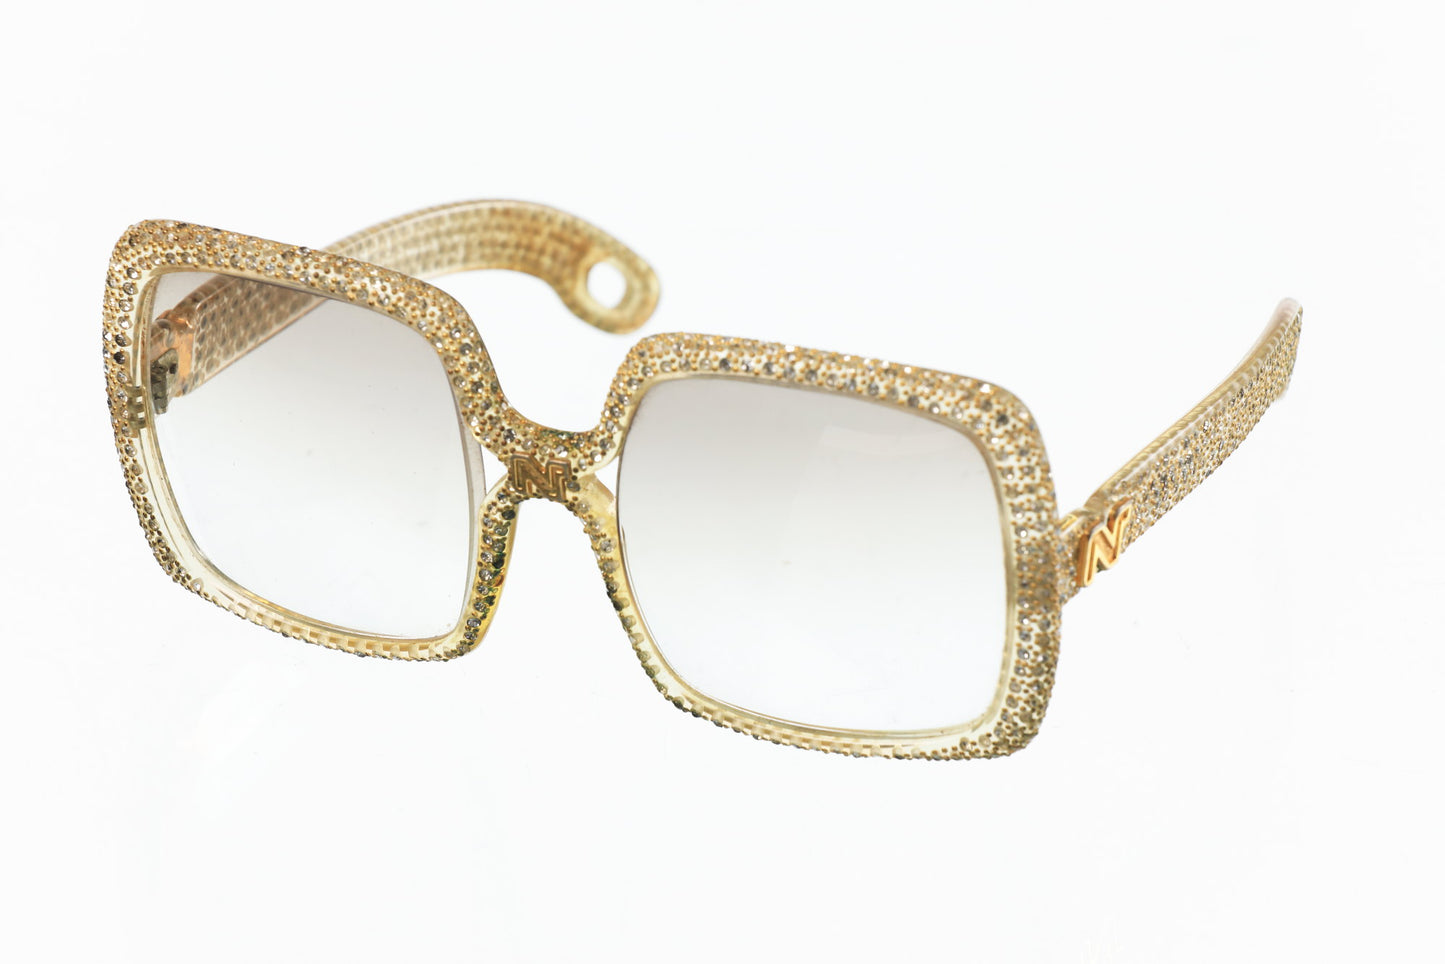 Vintage Nina Ricci glasses